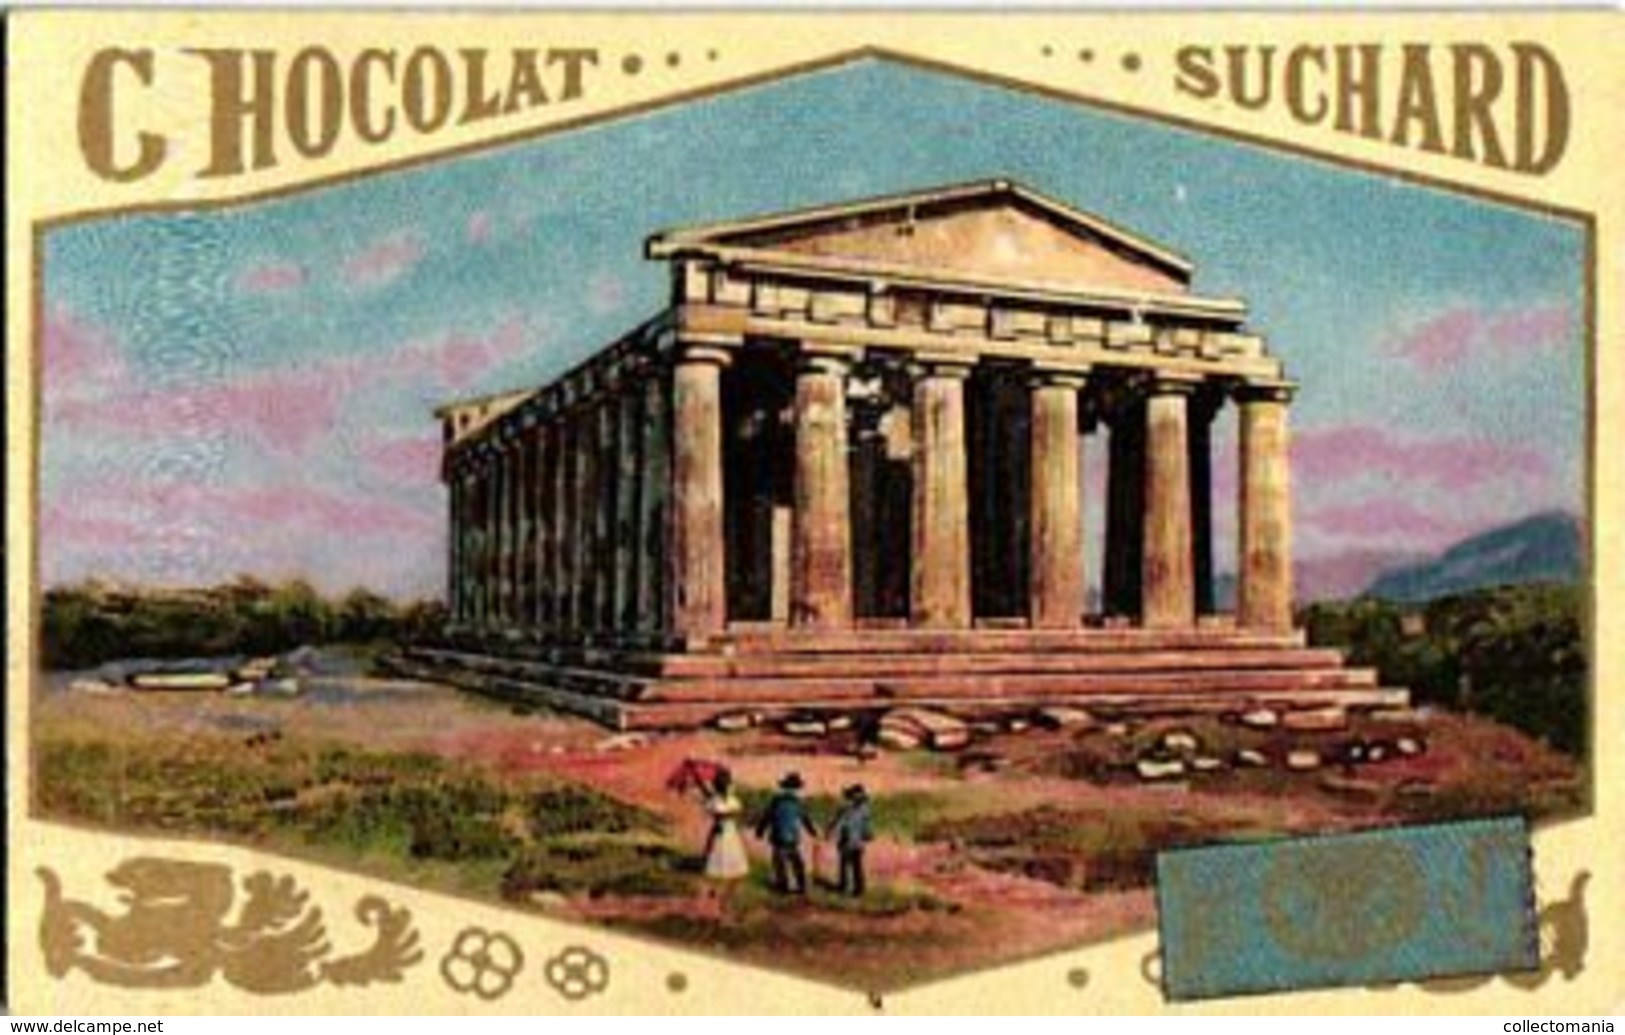 12 chromo litho cards chocolate SUCHARD set74 c1899 Litho Monuments of Antiquity; Boedha Kamekura, Pagode ning-po